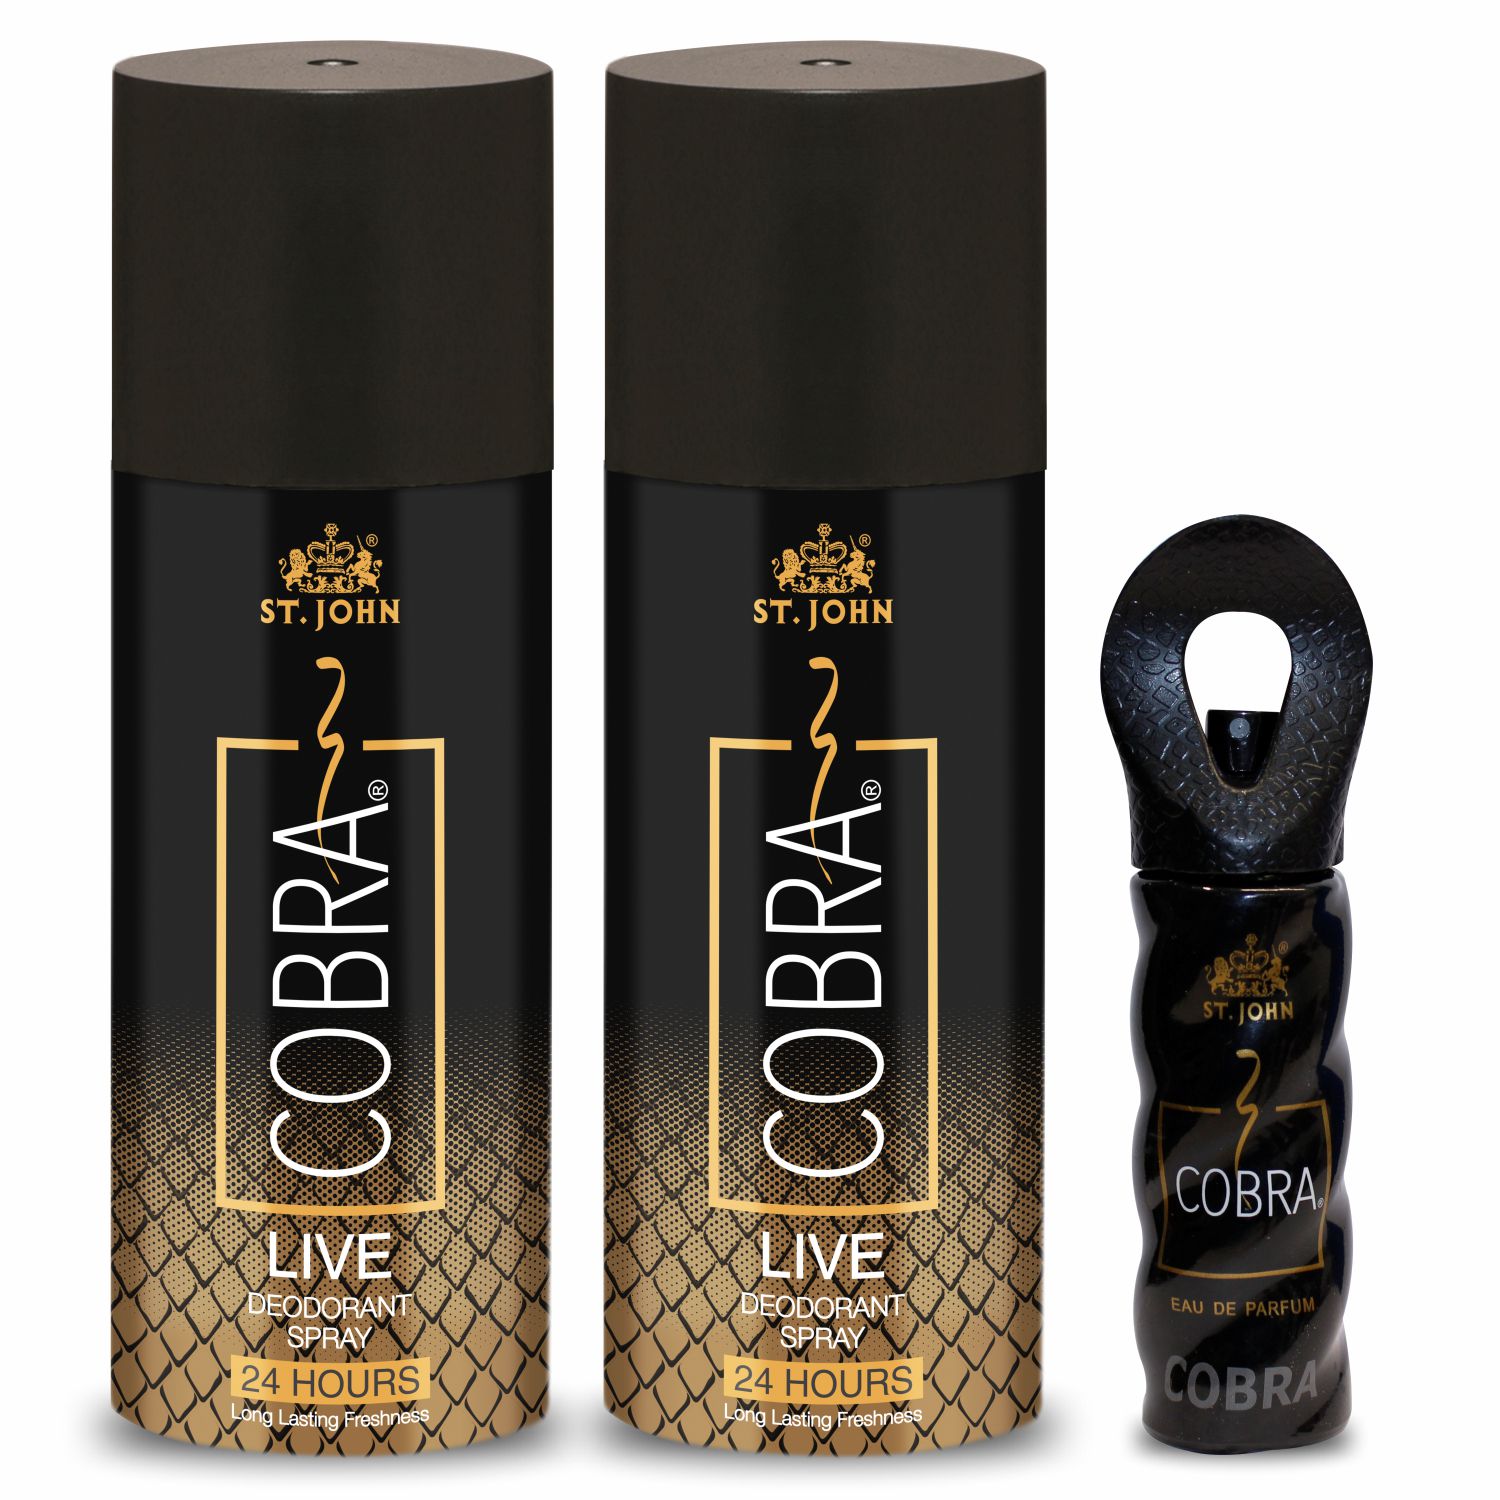     			St. John - Cobra Live 150ml & 15 Perfume Pack of 3 Deodorant Spray & Perfume for Unisex 150 ml ( Pack of 3 )